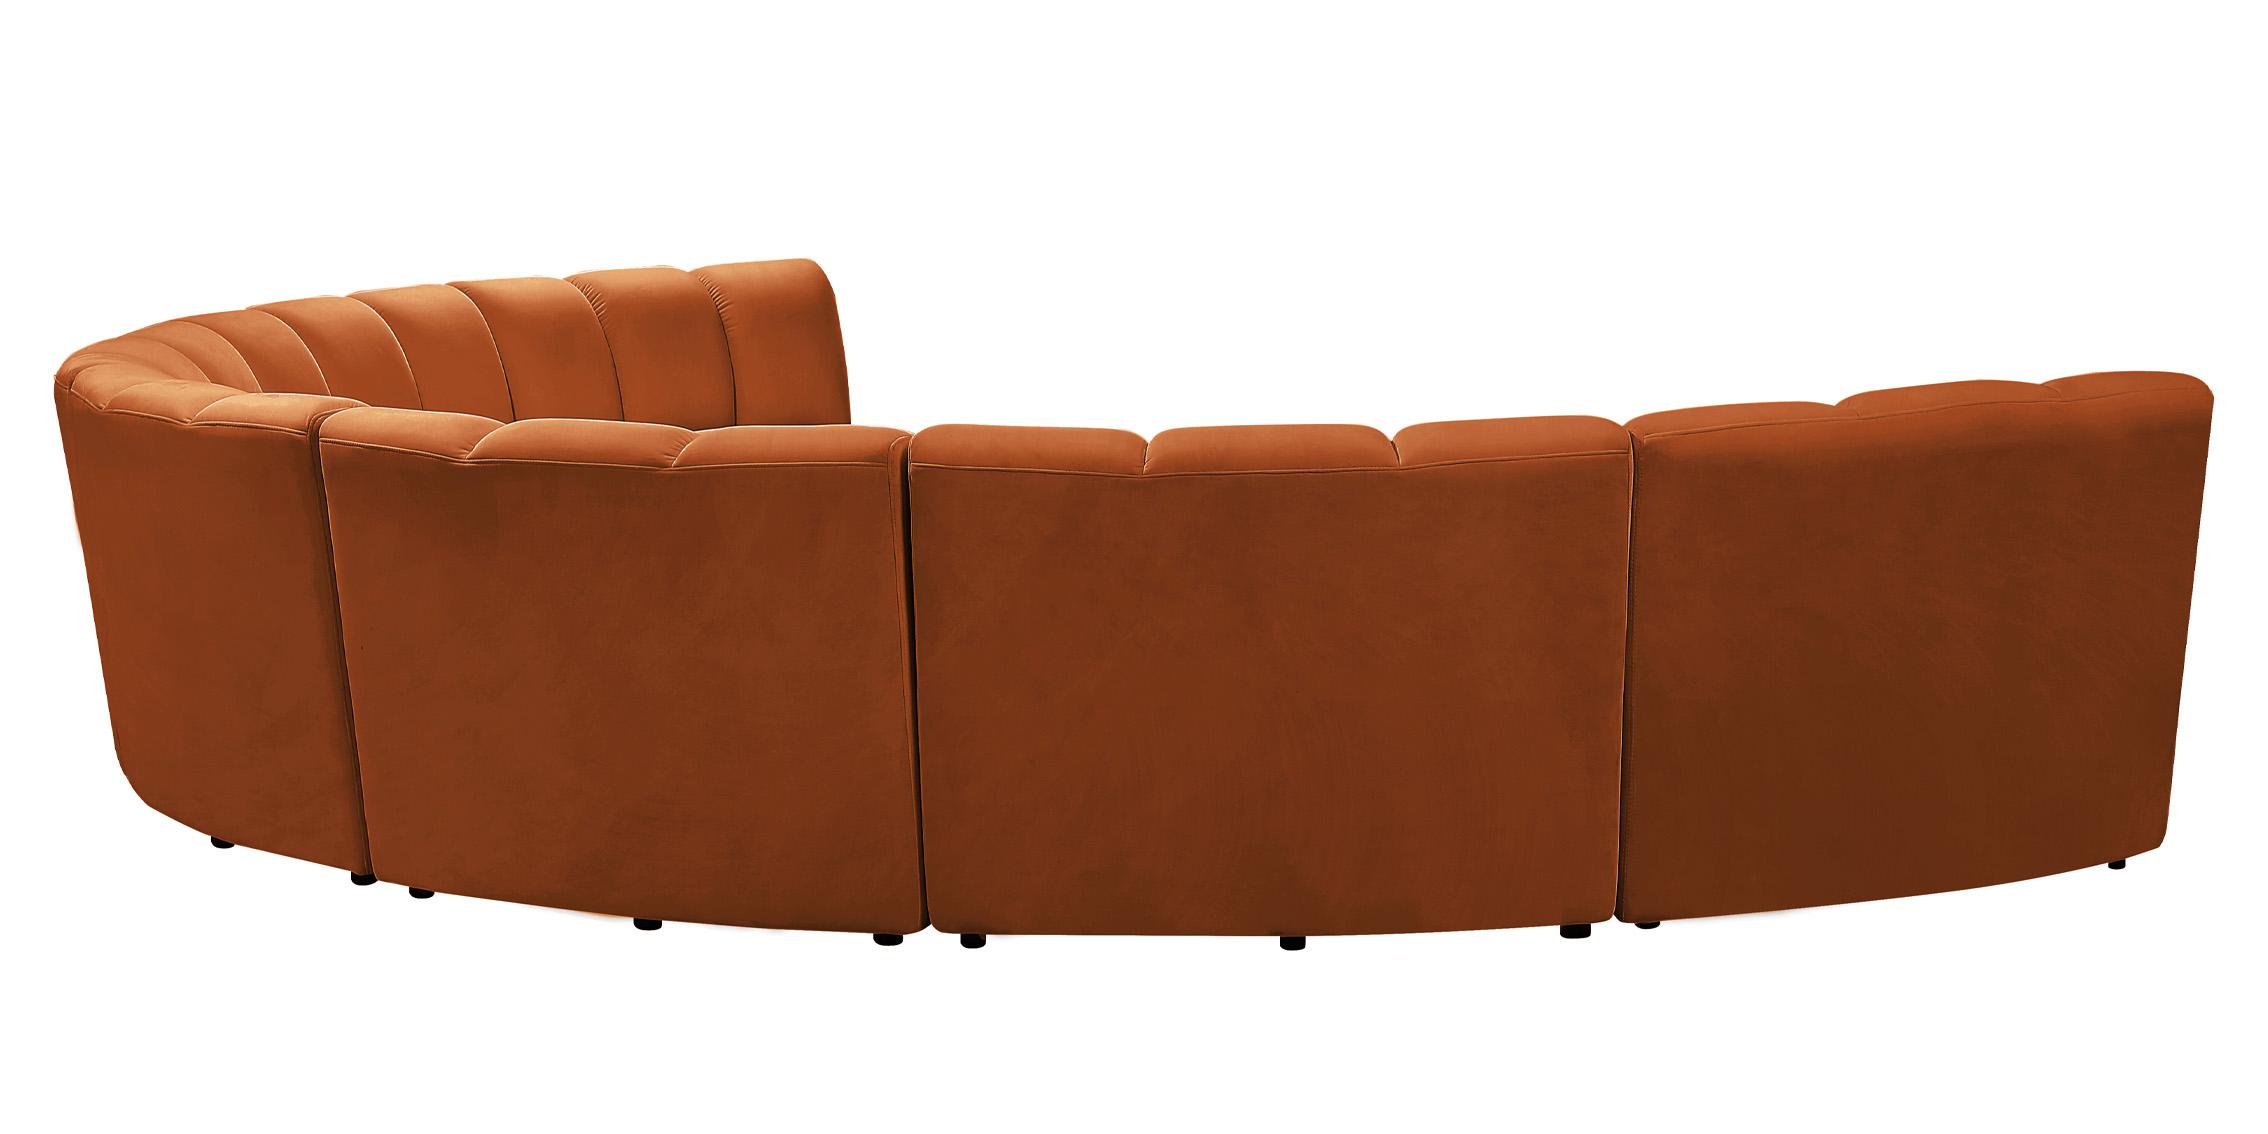 

    
638Cognac-7PC Meridian Furniture Modular Sectional Sofa
